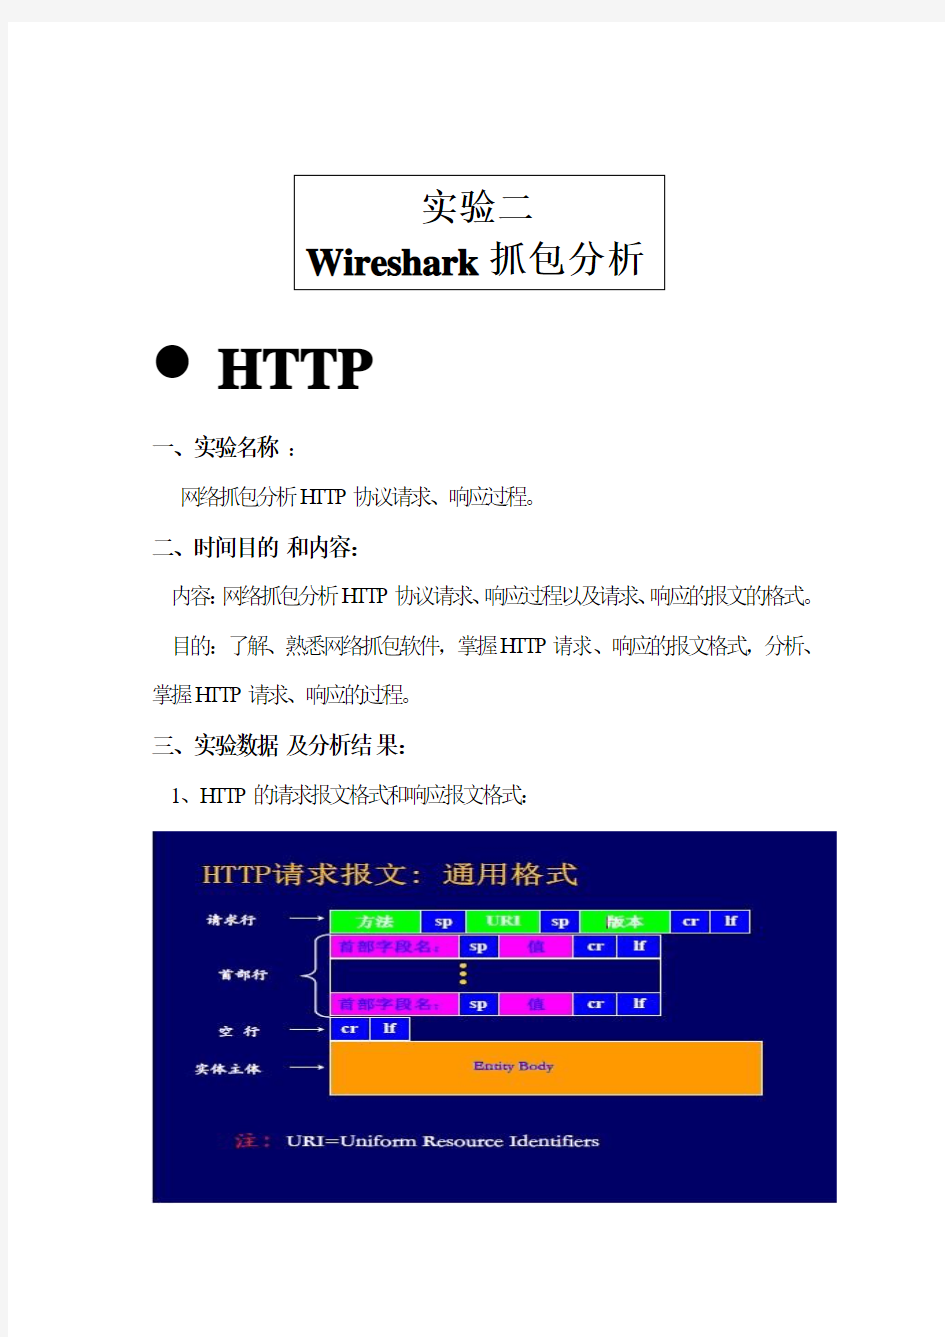 Wireshark抓包分析